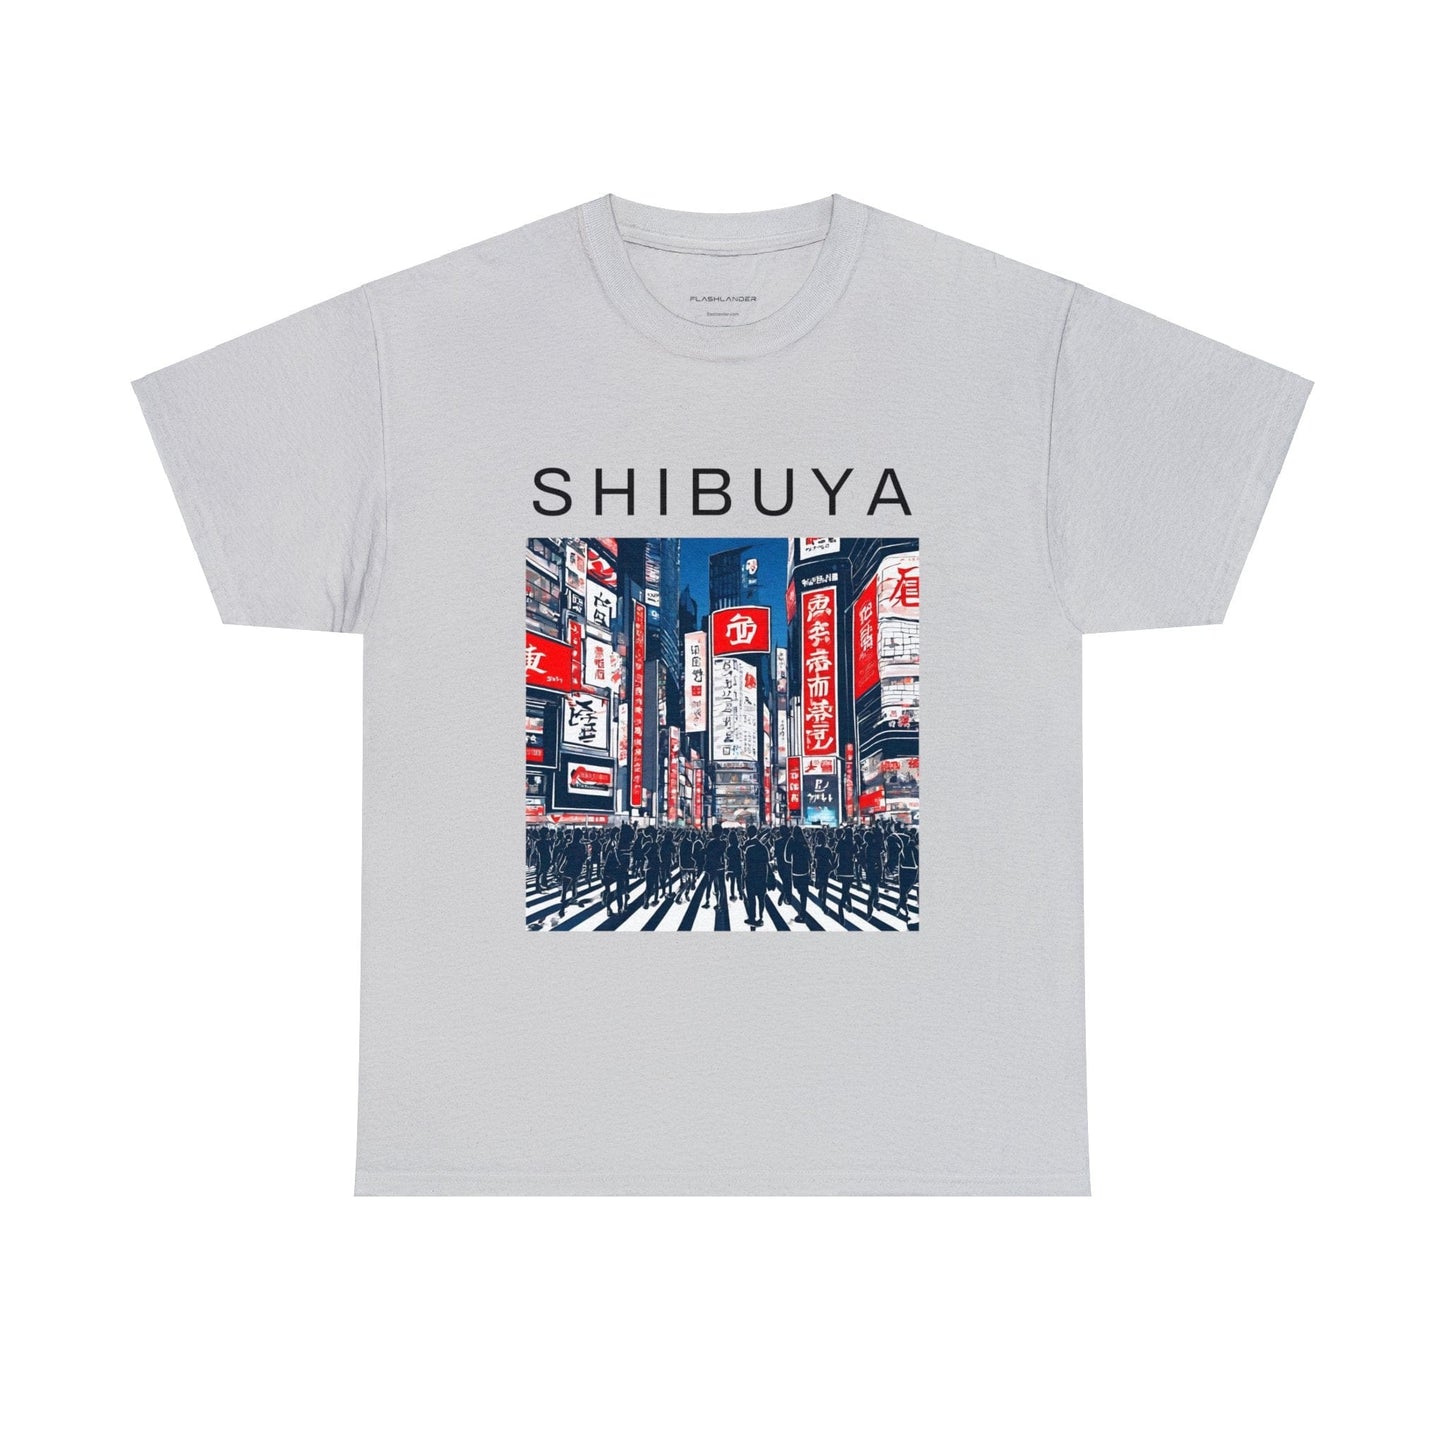 Japanese Shirt. Shibuya Tokyo Shirt. Japanese Gifts. Harajuku Shirt. Travel Shirt. Travel Gift. Kanji Shirt. Japanese Streetwear | Souvenir from Japan Unisex Tee Flashlander